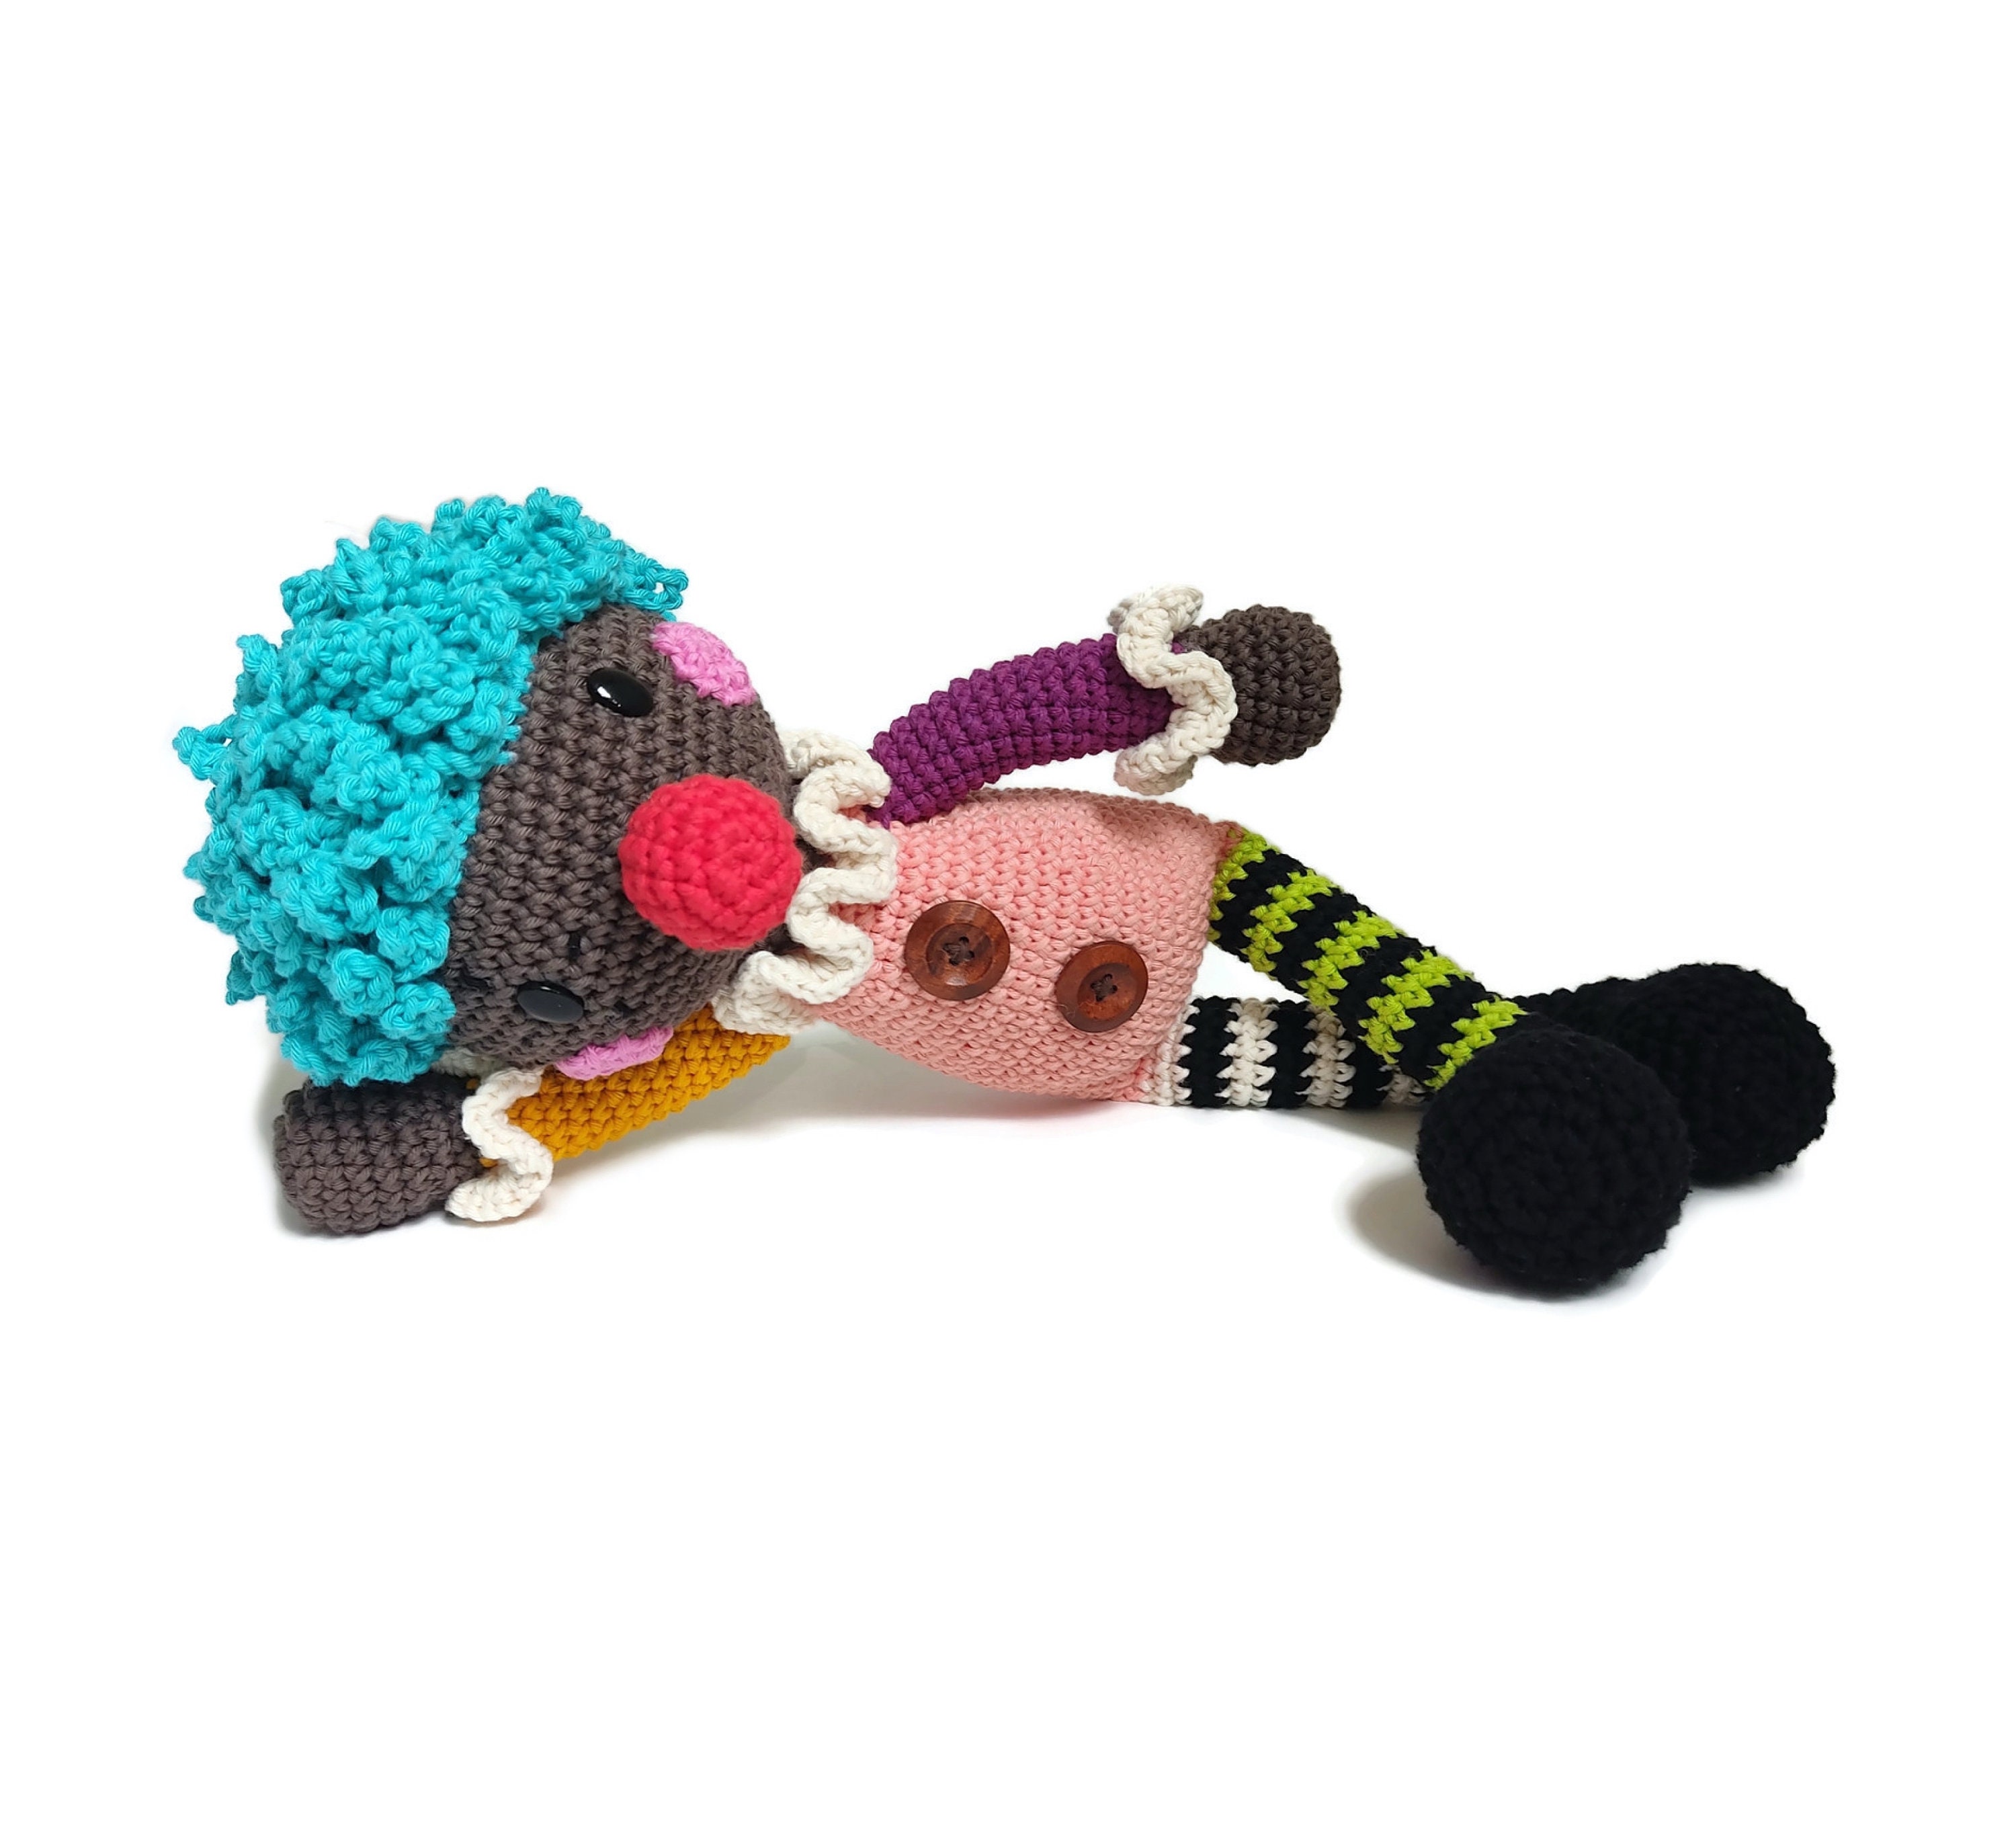 Handmade Crochet Clown Doll Amigurumi Clown Handmade Doll - Etsy Sweden